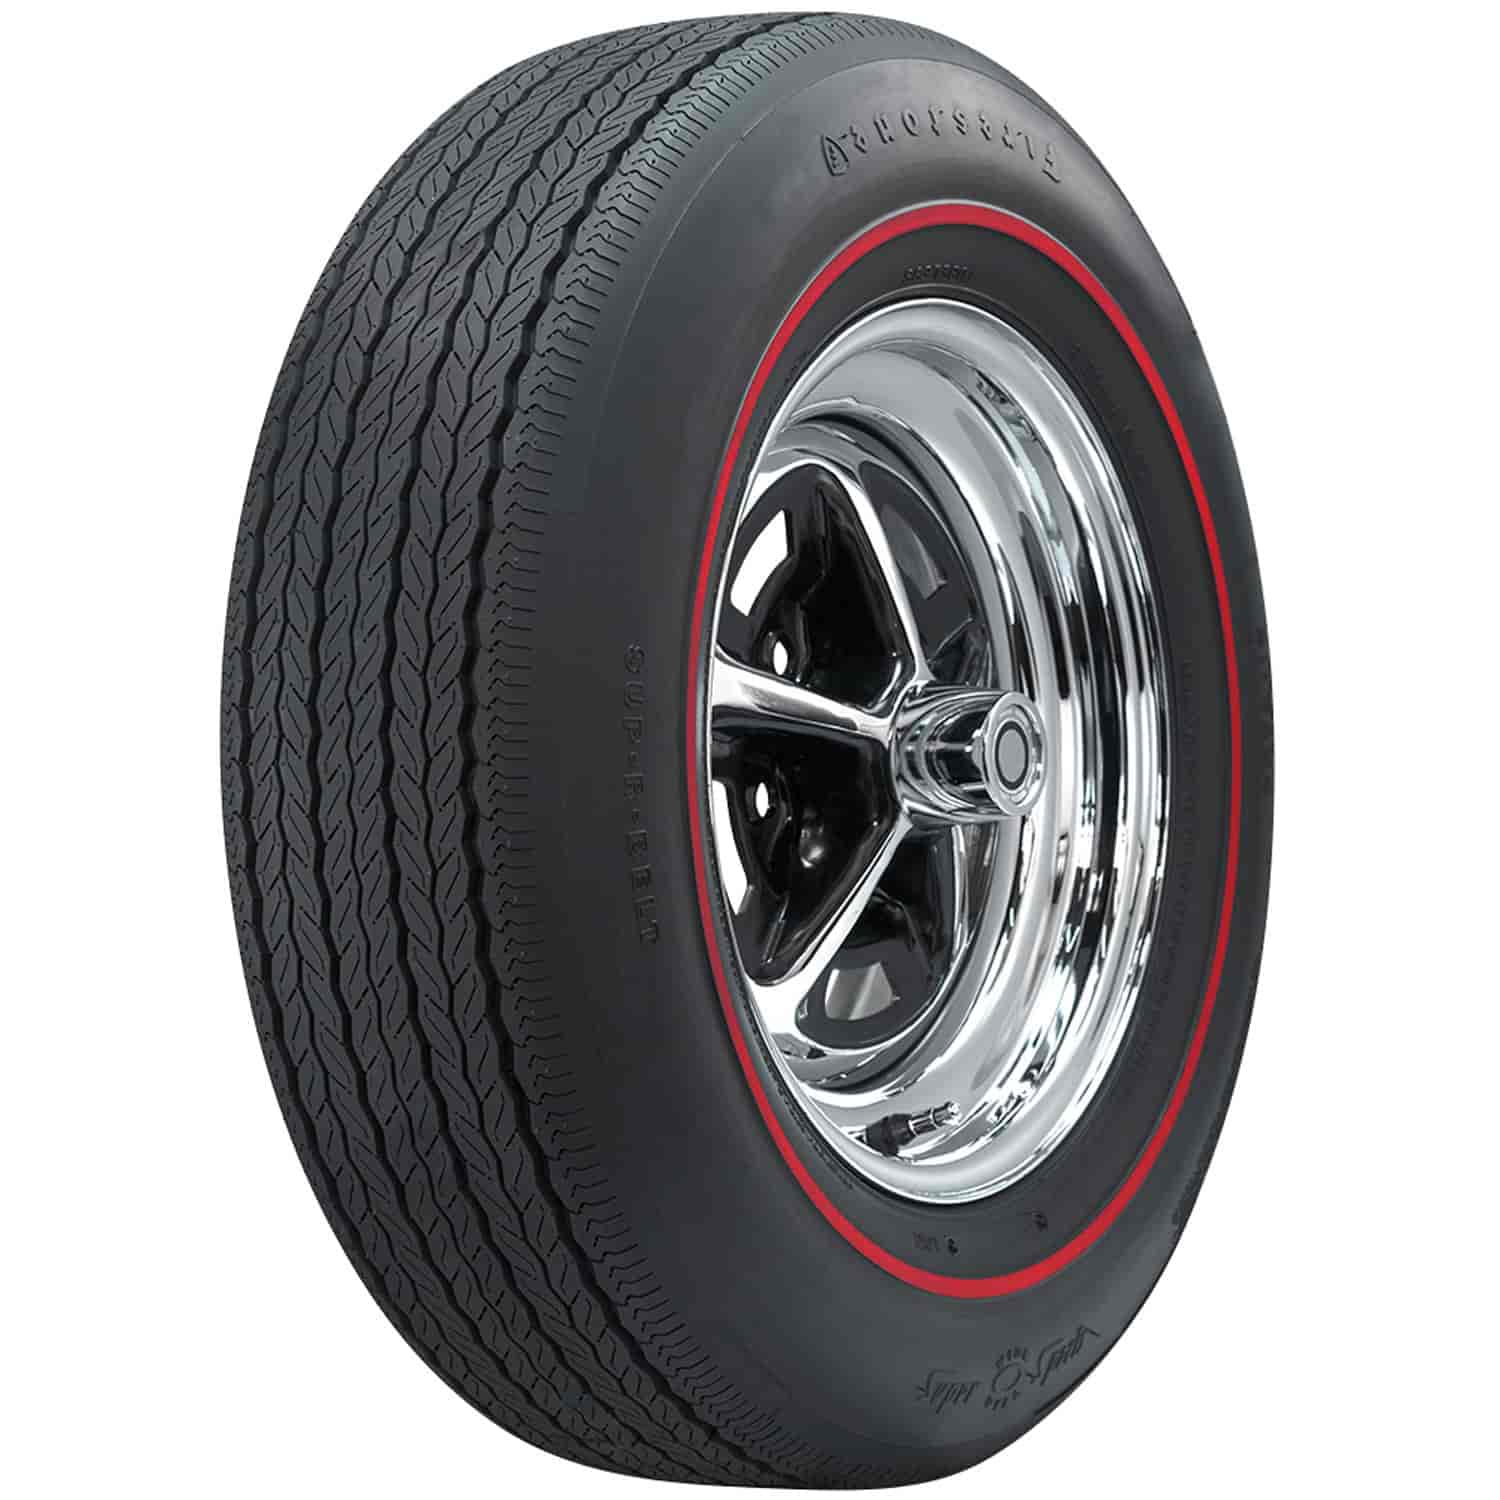 Firestone Wide Oval Radial Tire GR70-14